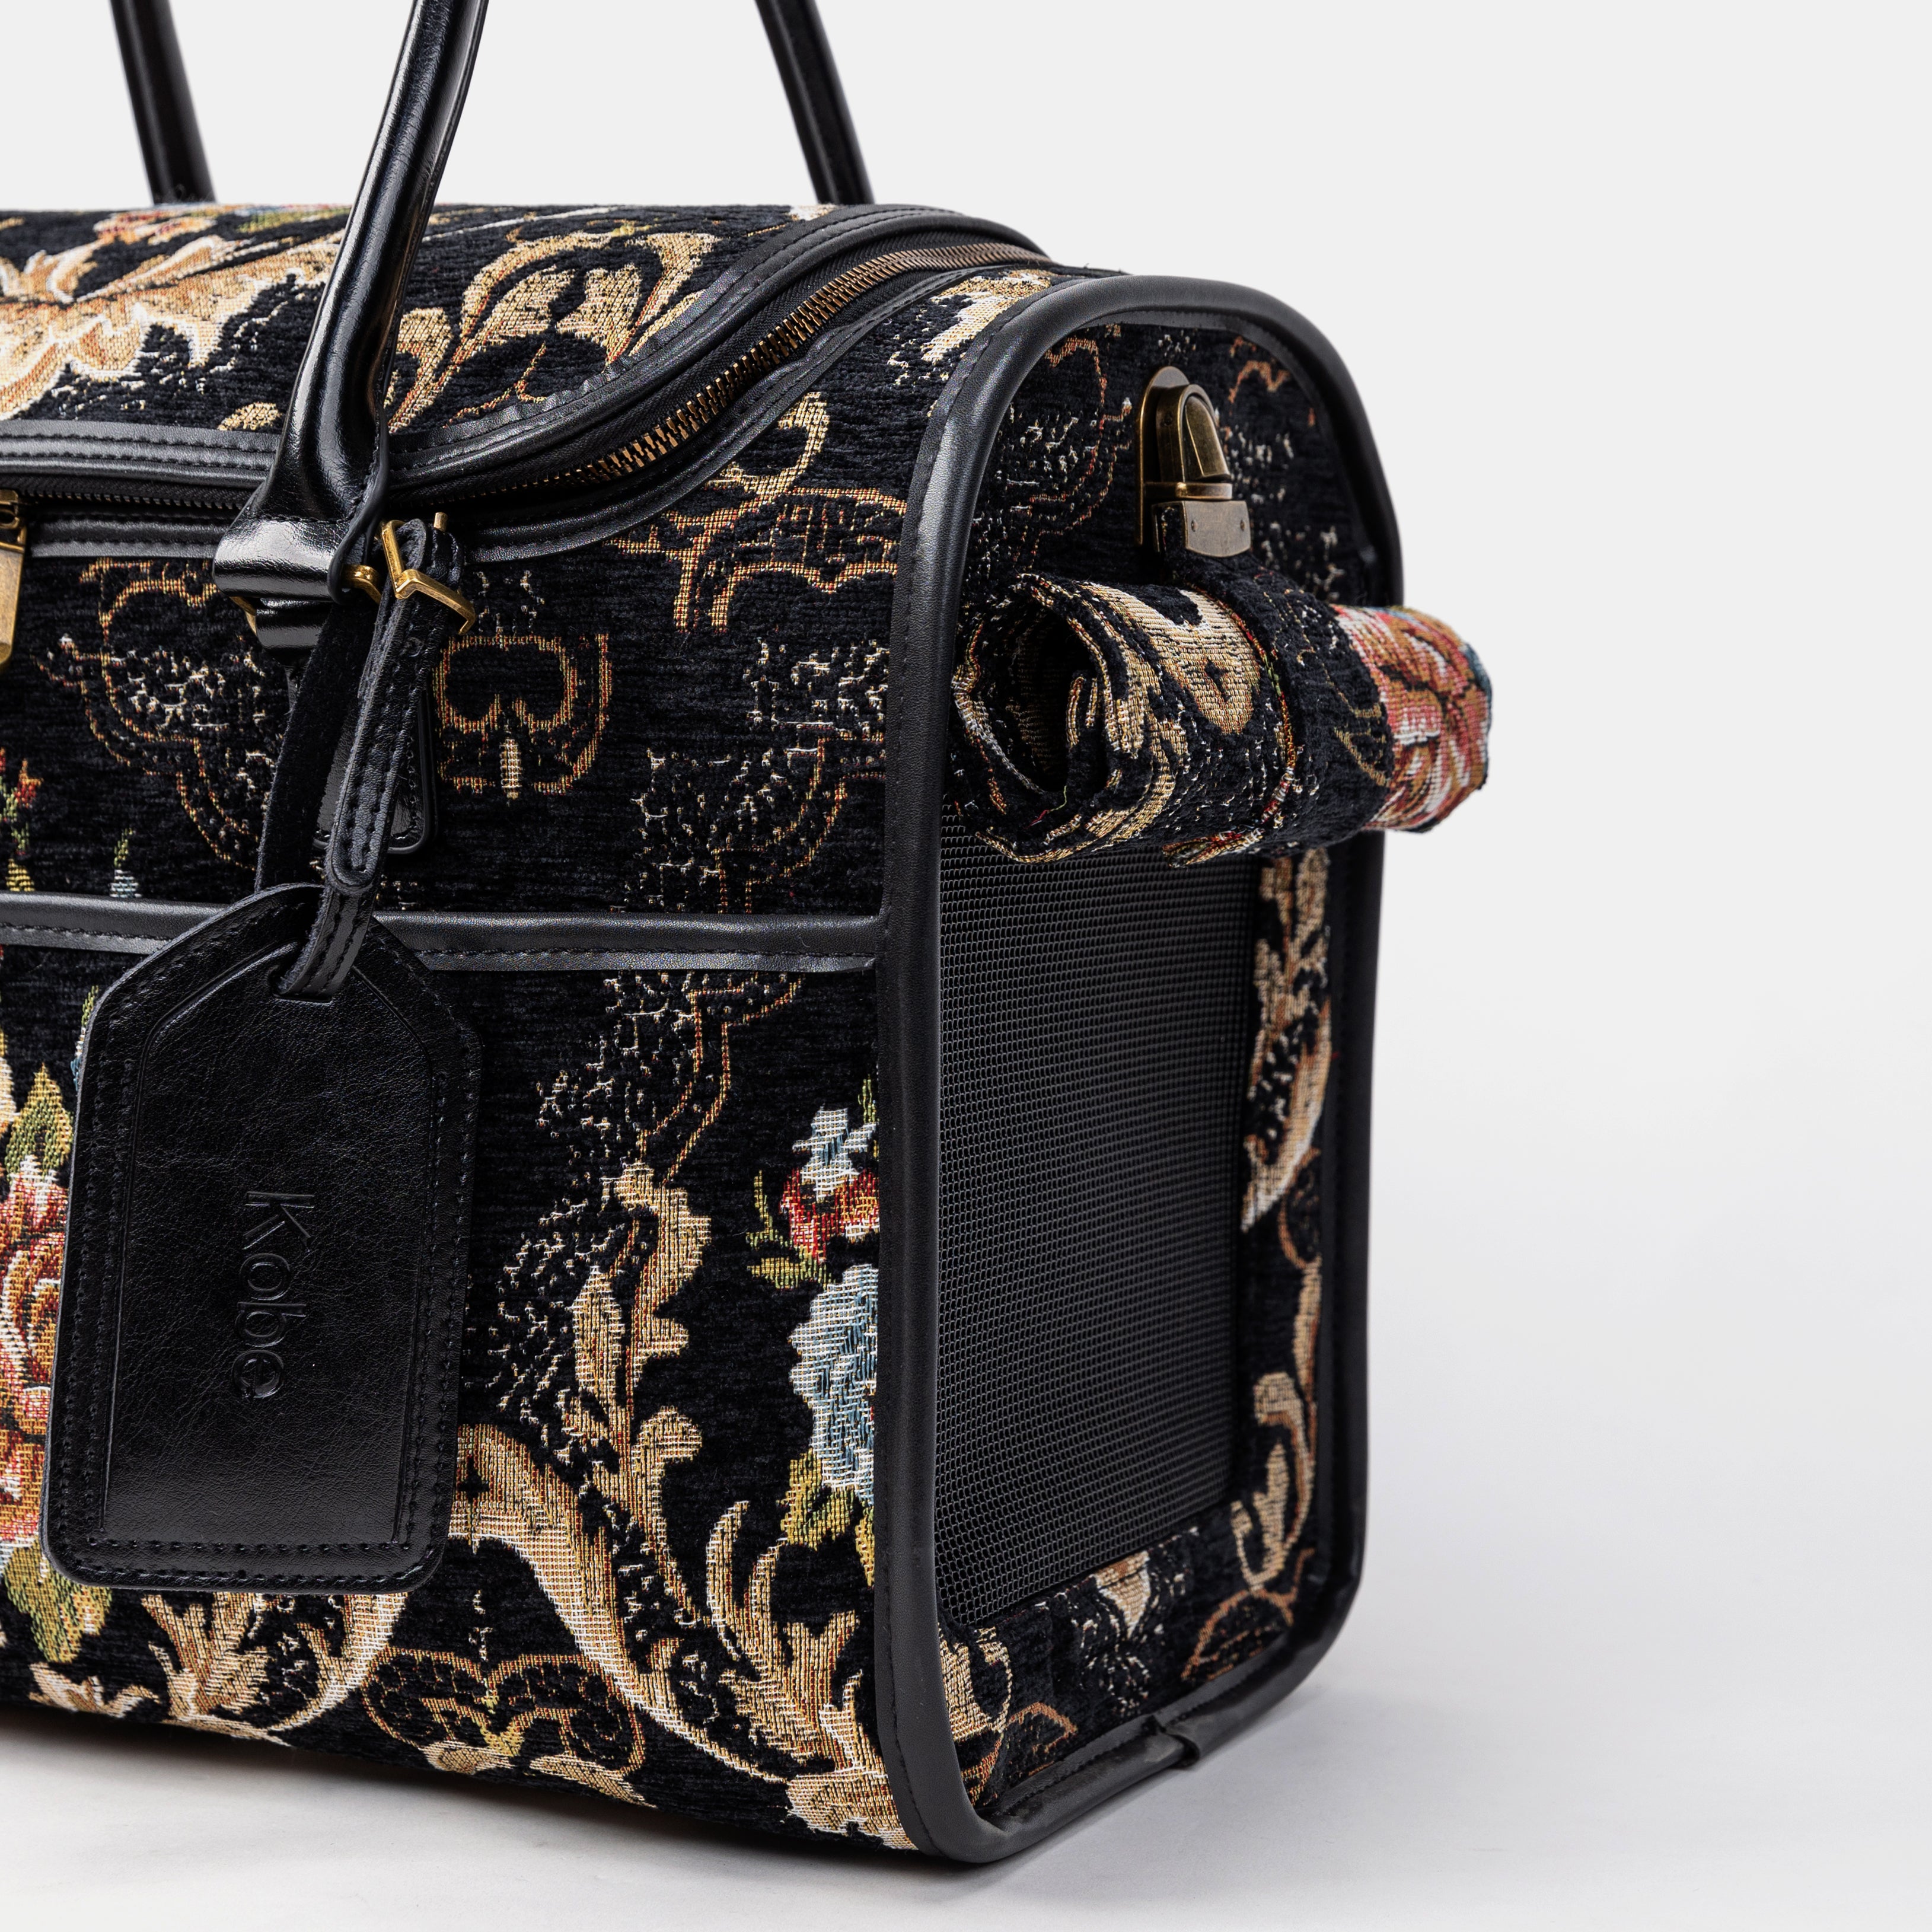 Travel Dog Carrier Bag Floral Black  Tag